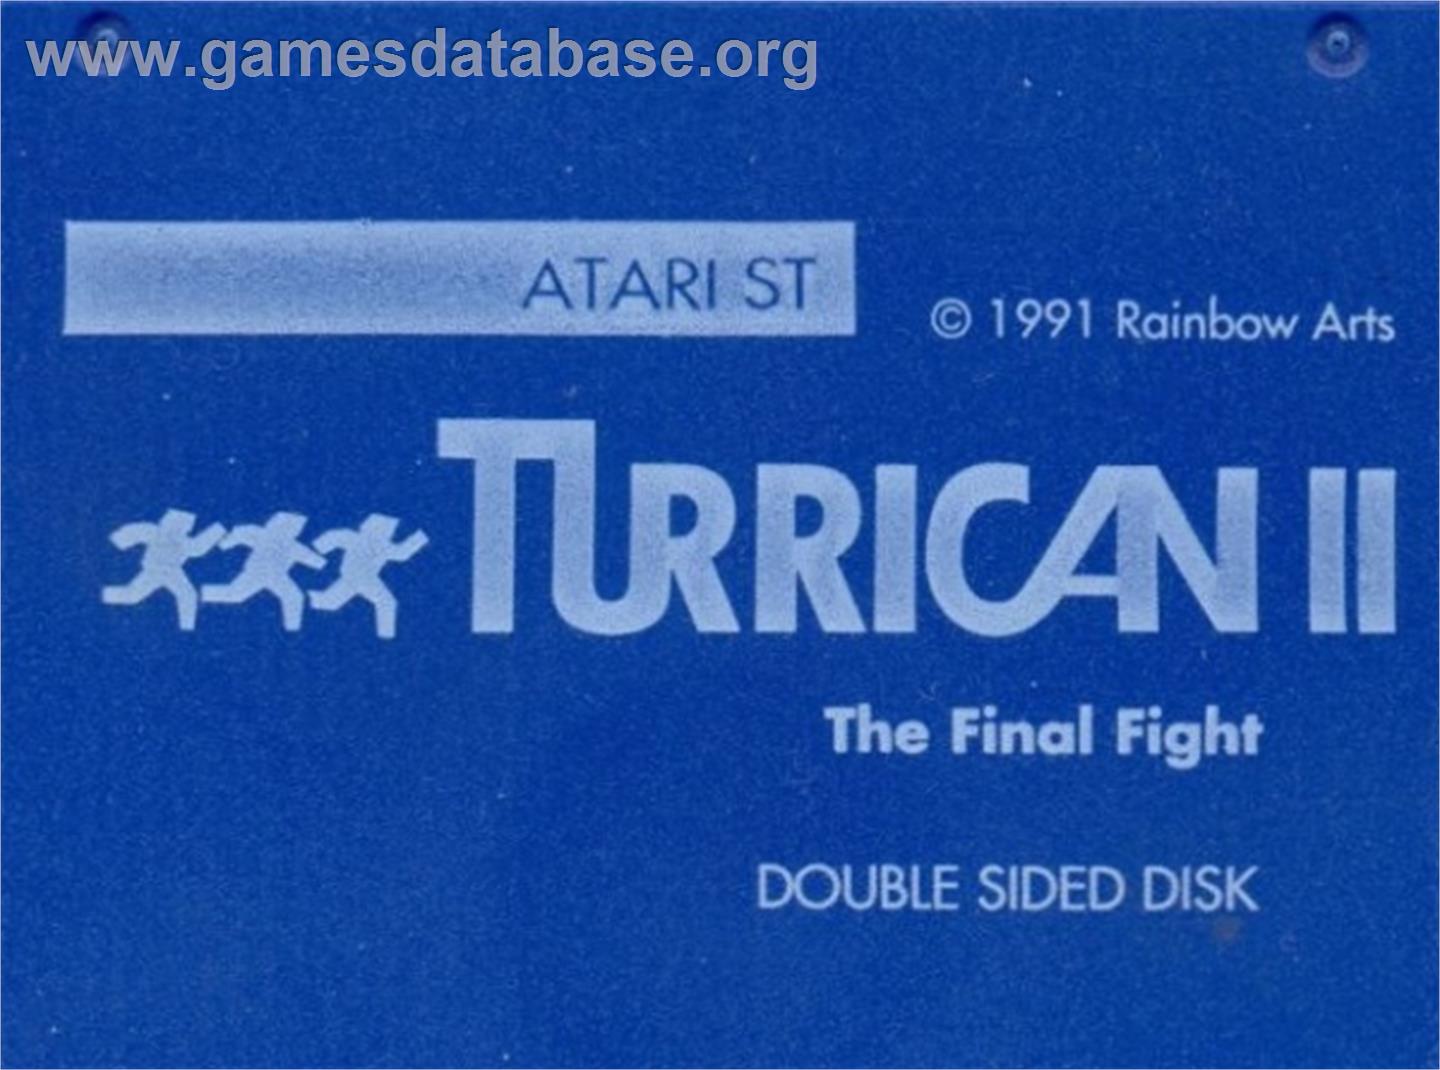 Turrican II: The Final Fight - Atari ST - Artwork - Cartridge Top